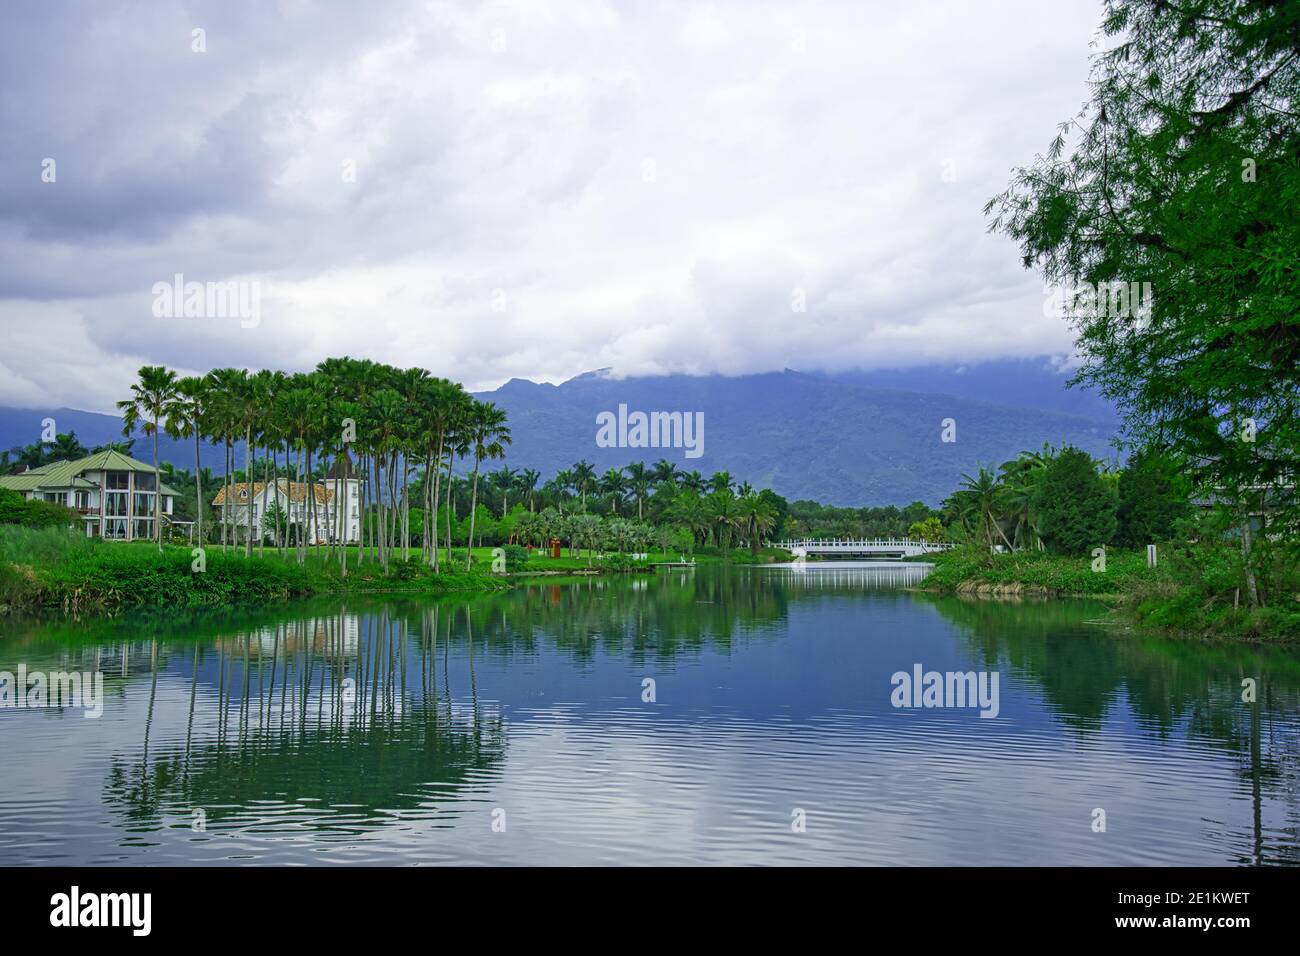 Es gibt Berge, Wasser, grüne Bäume und eine ländliche Lebensumgebung. Hualien County, Taiwan ist ein sehr beliebter Ort für Urlaubsreisen. Stockfoto